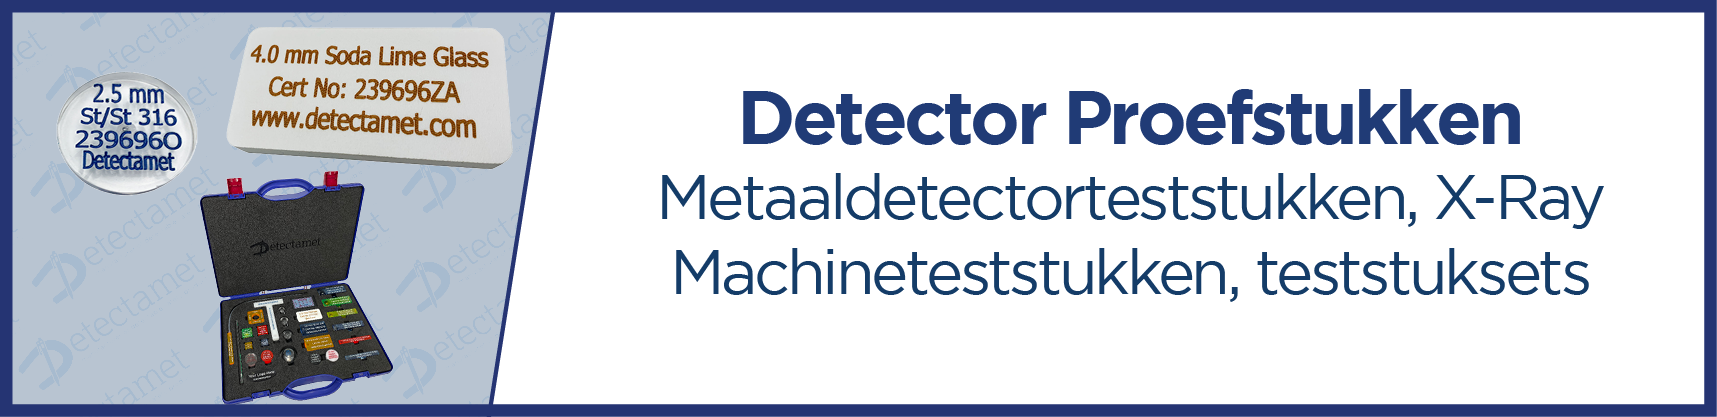 Teststukken voor metaaldetectoren